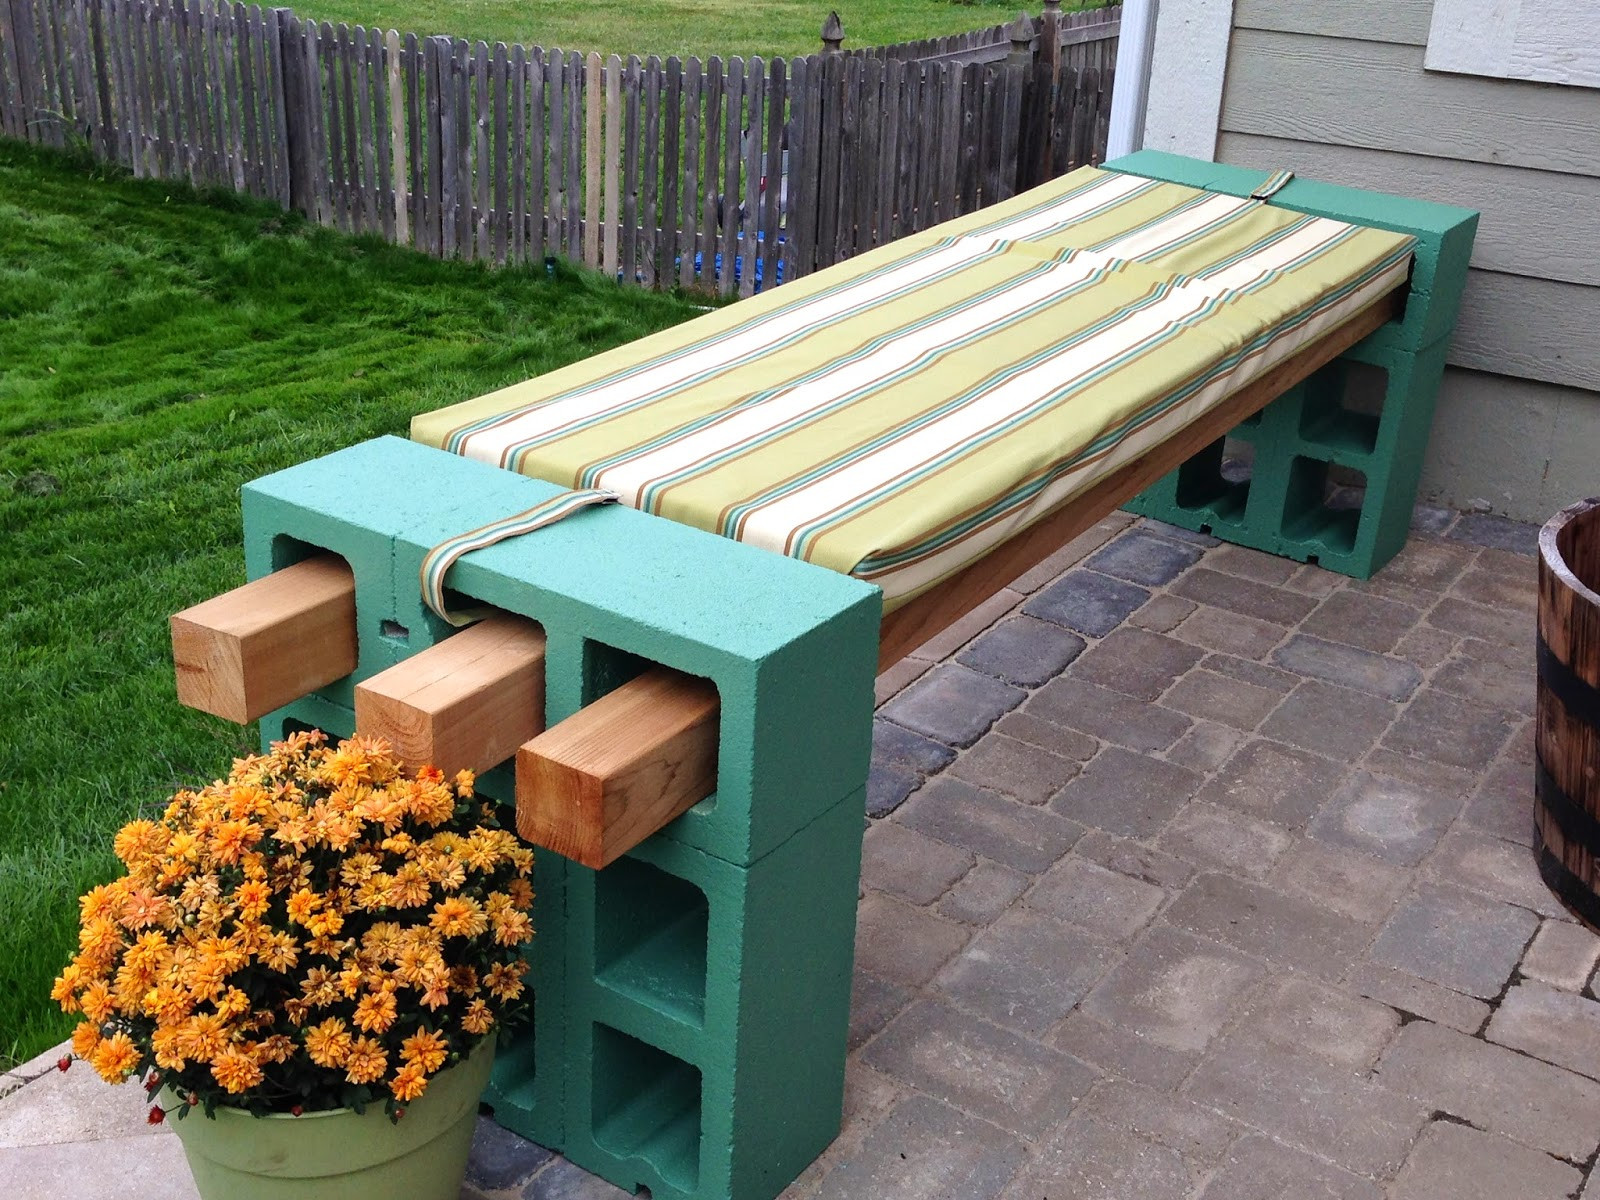 Best ideas about Cinder Block Bench DIY
. Save or Pin DIY Cinder Block Bench Now.